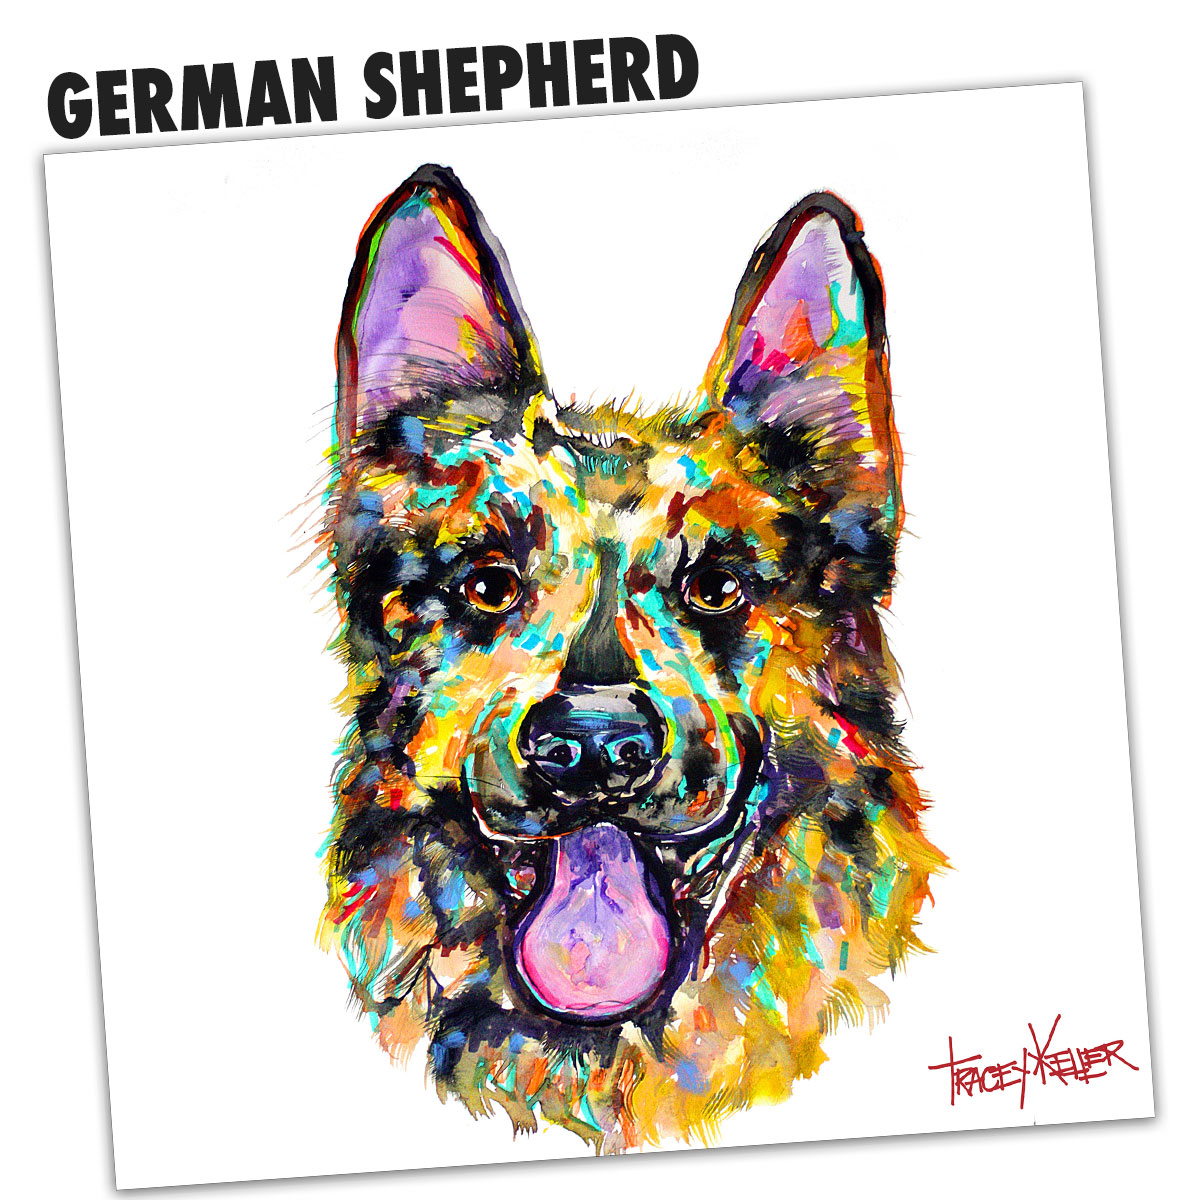 GERMAN SHEPHERD 1 1 1